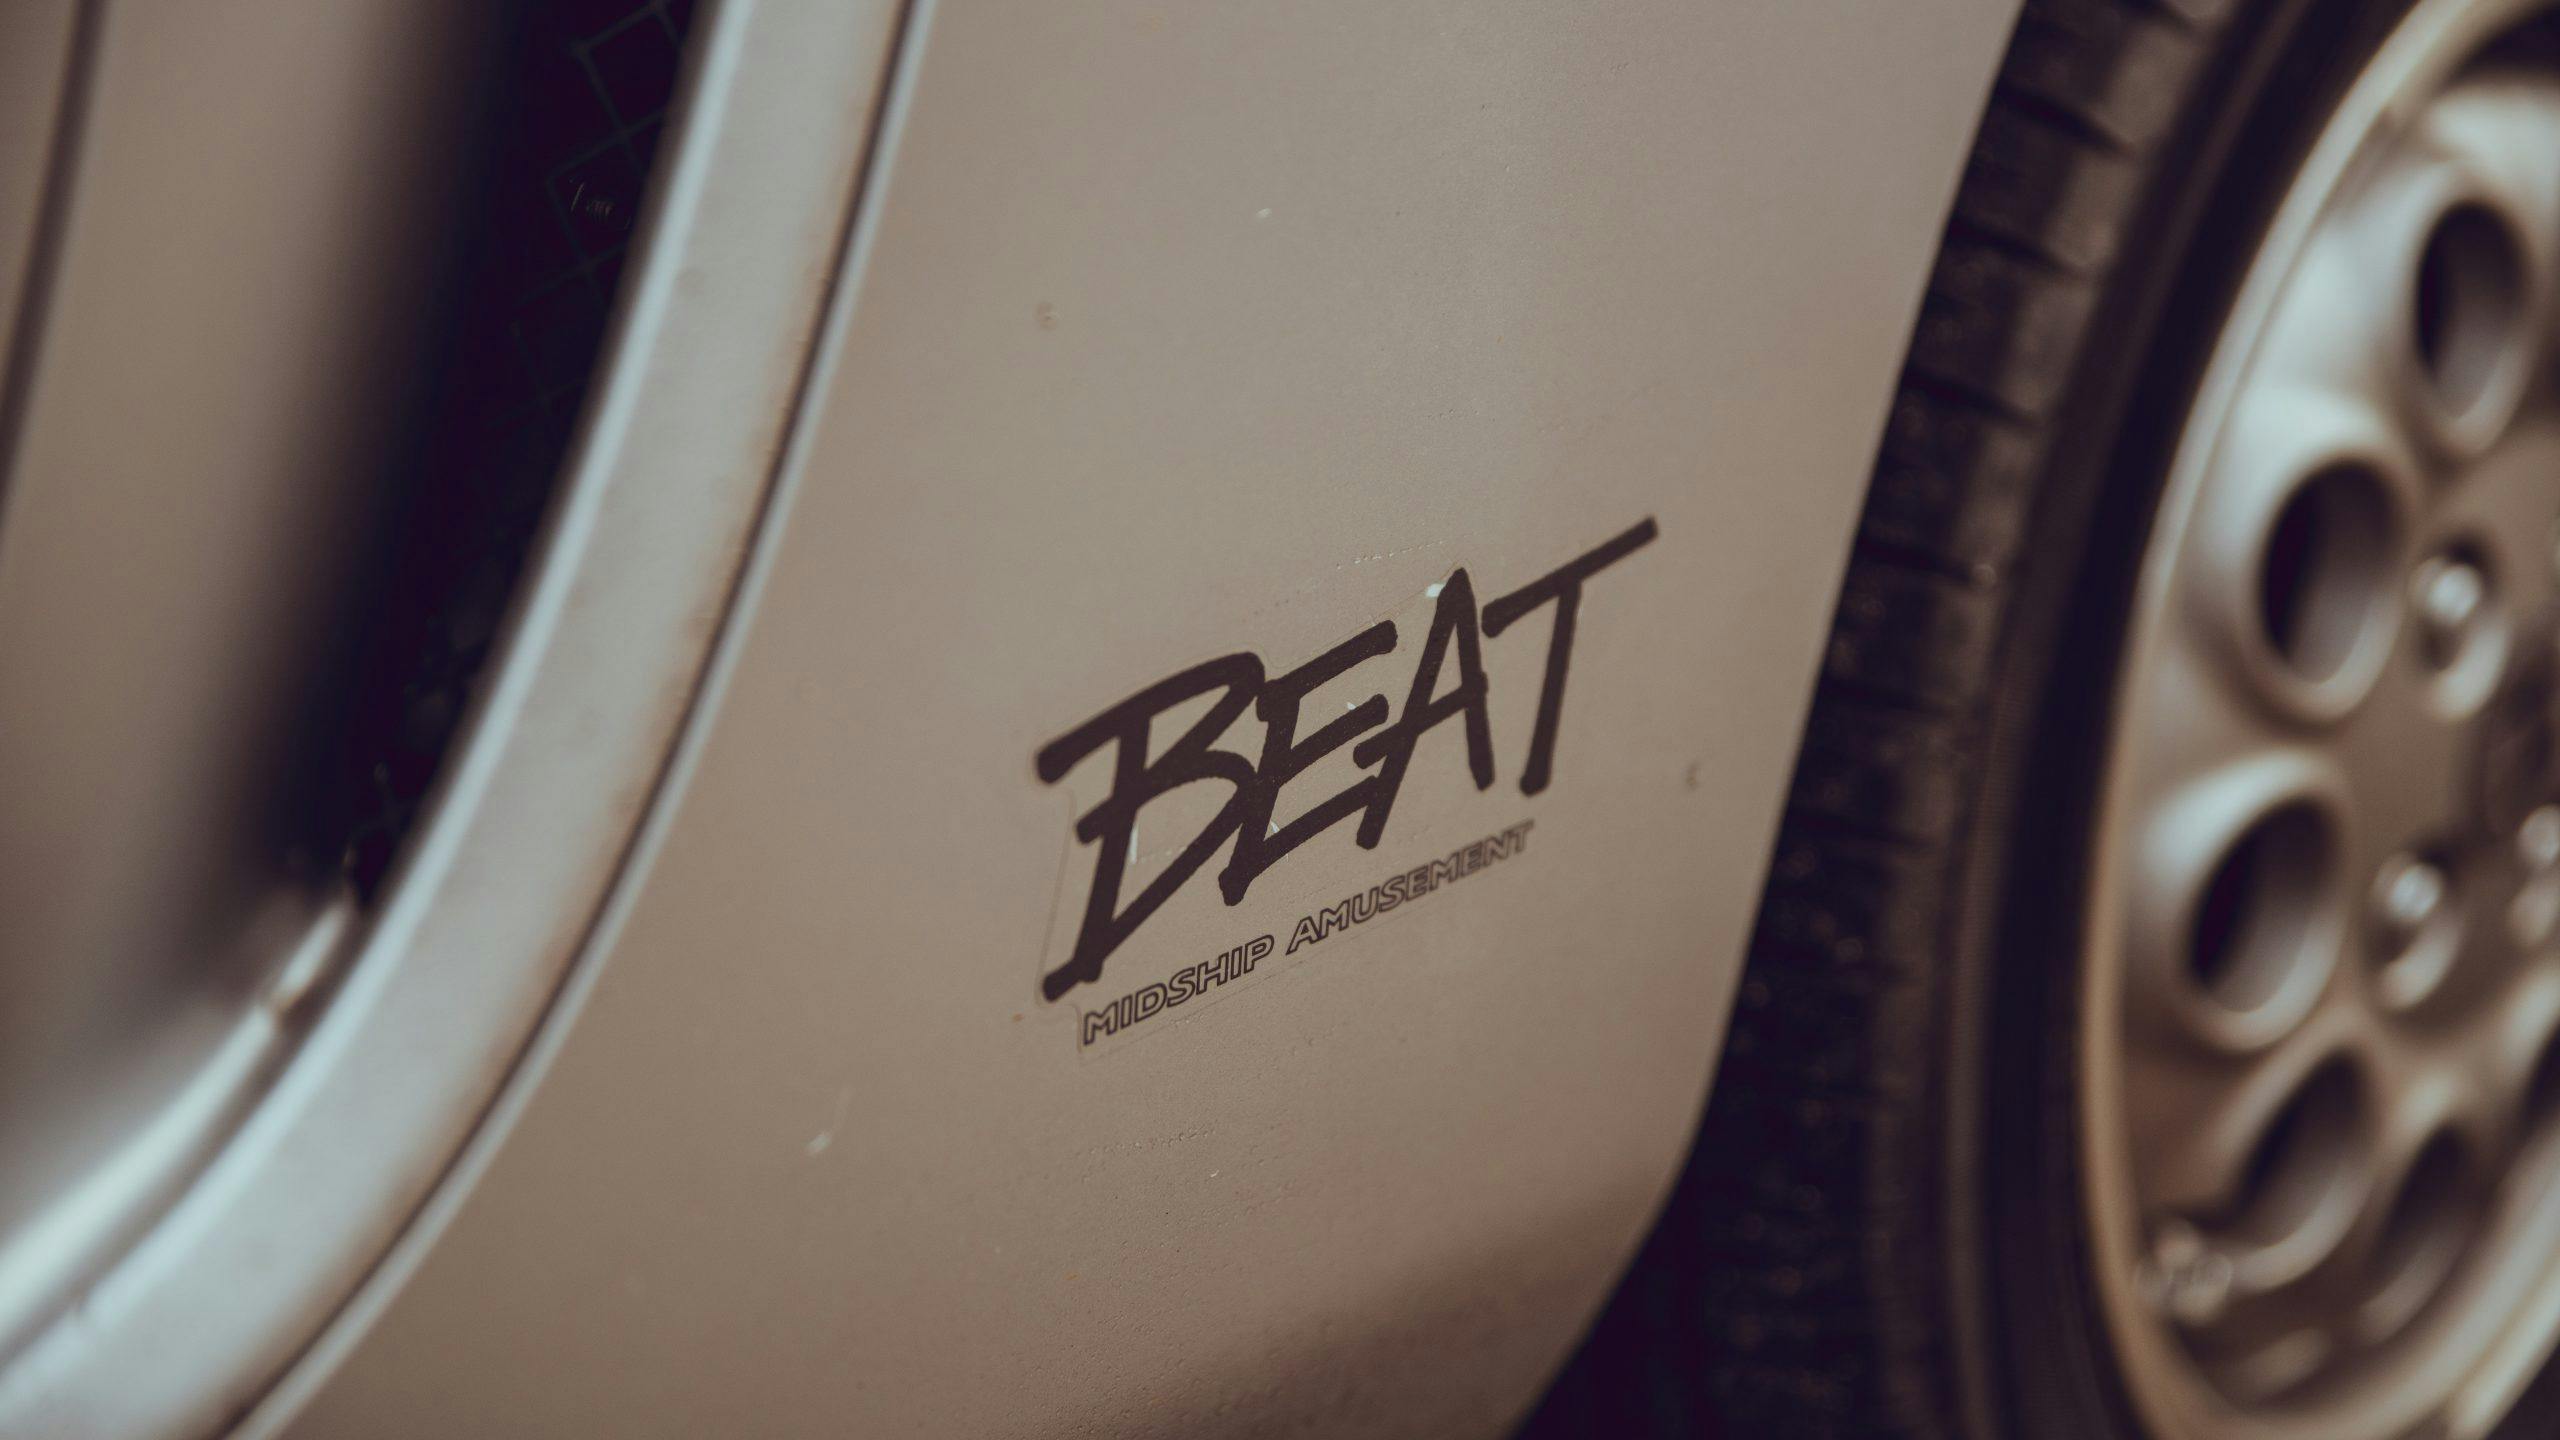 1991 Honda Beat